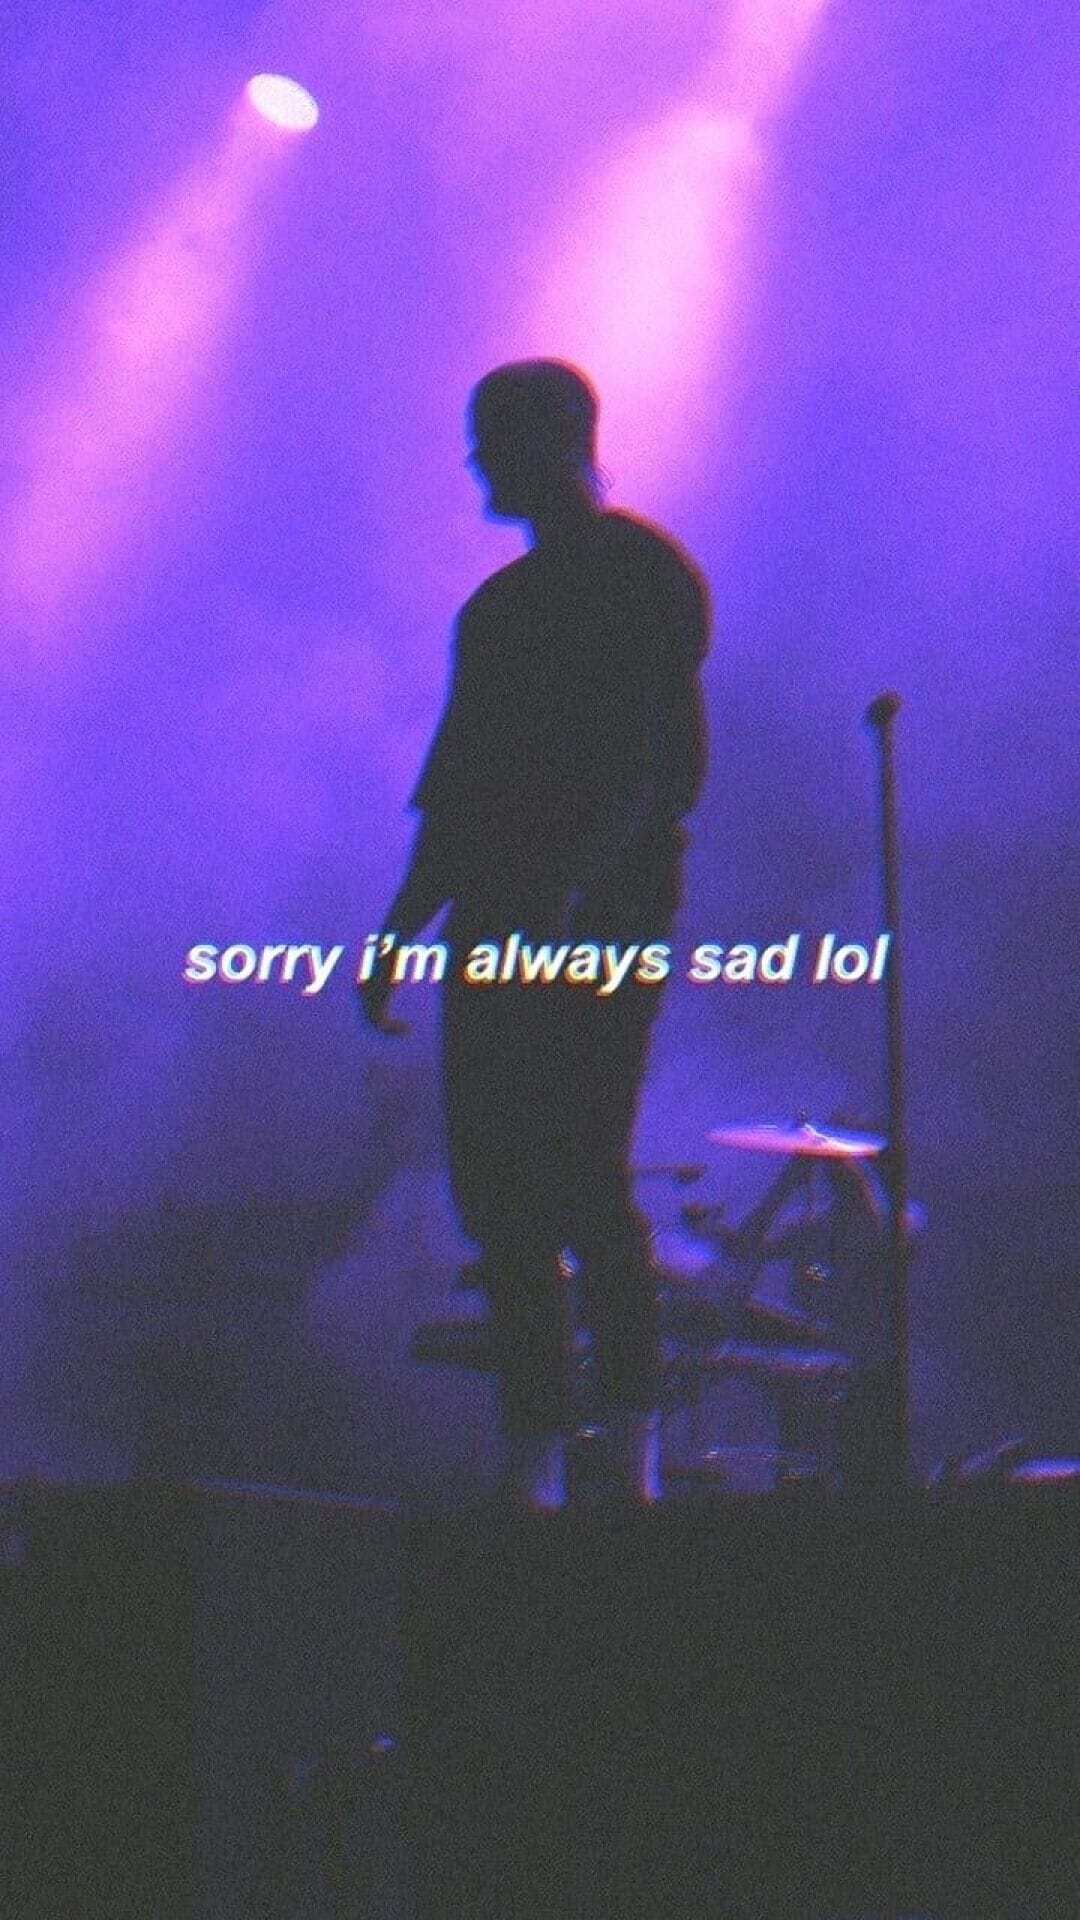 Sorry i'm always sad - Depressing